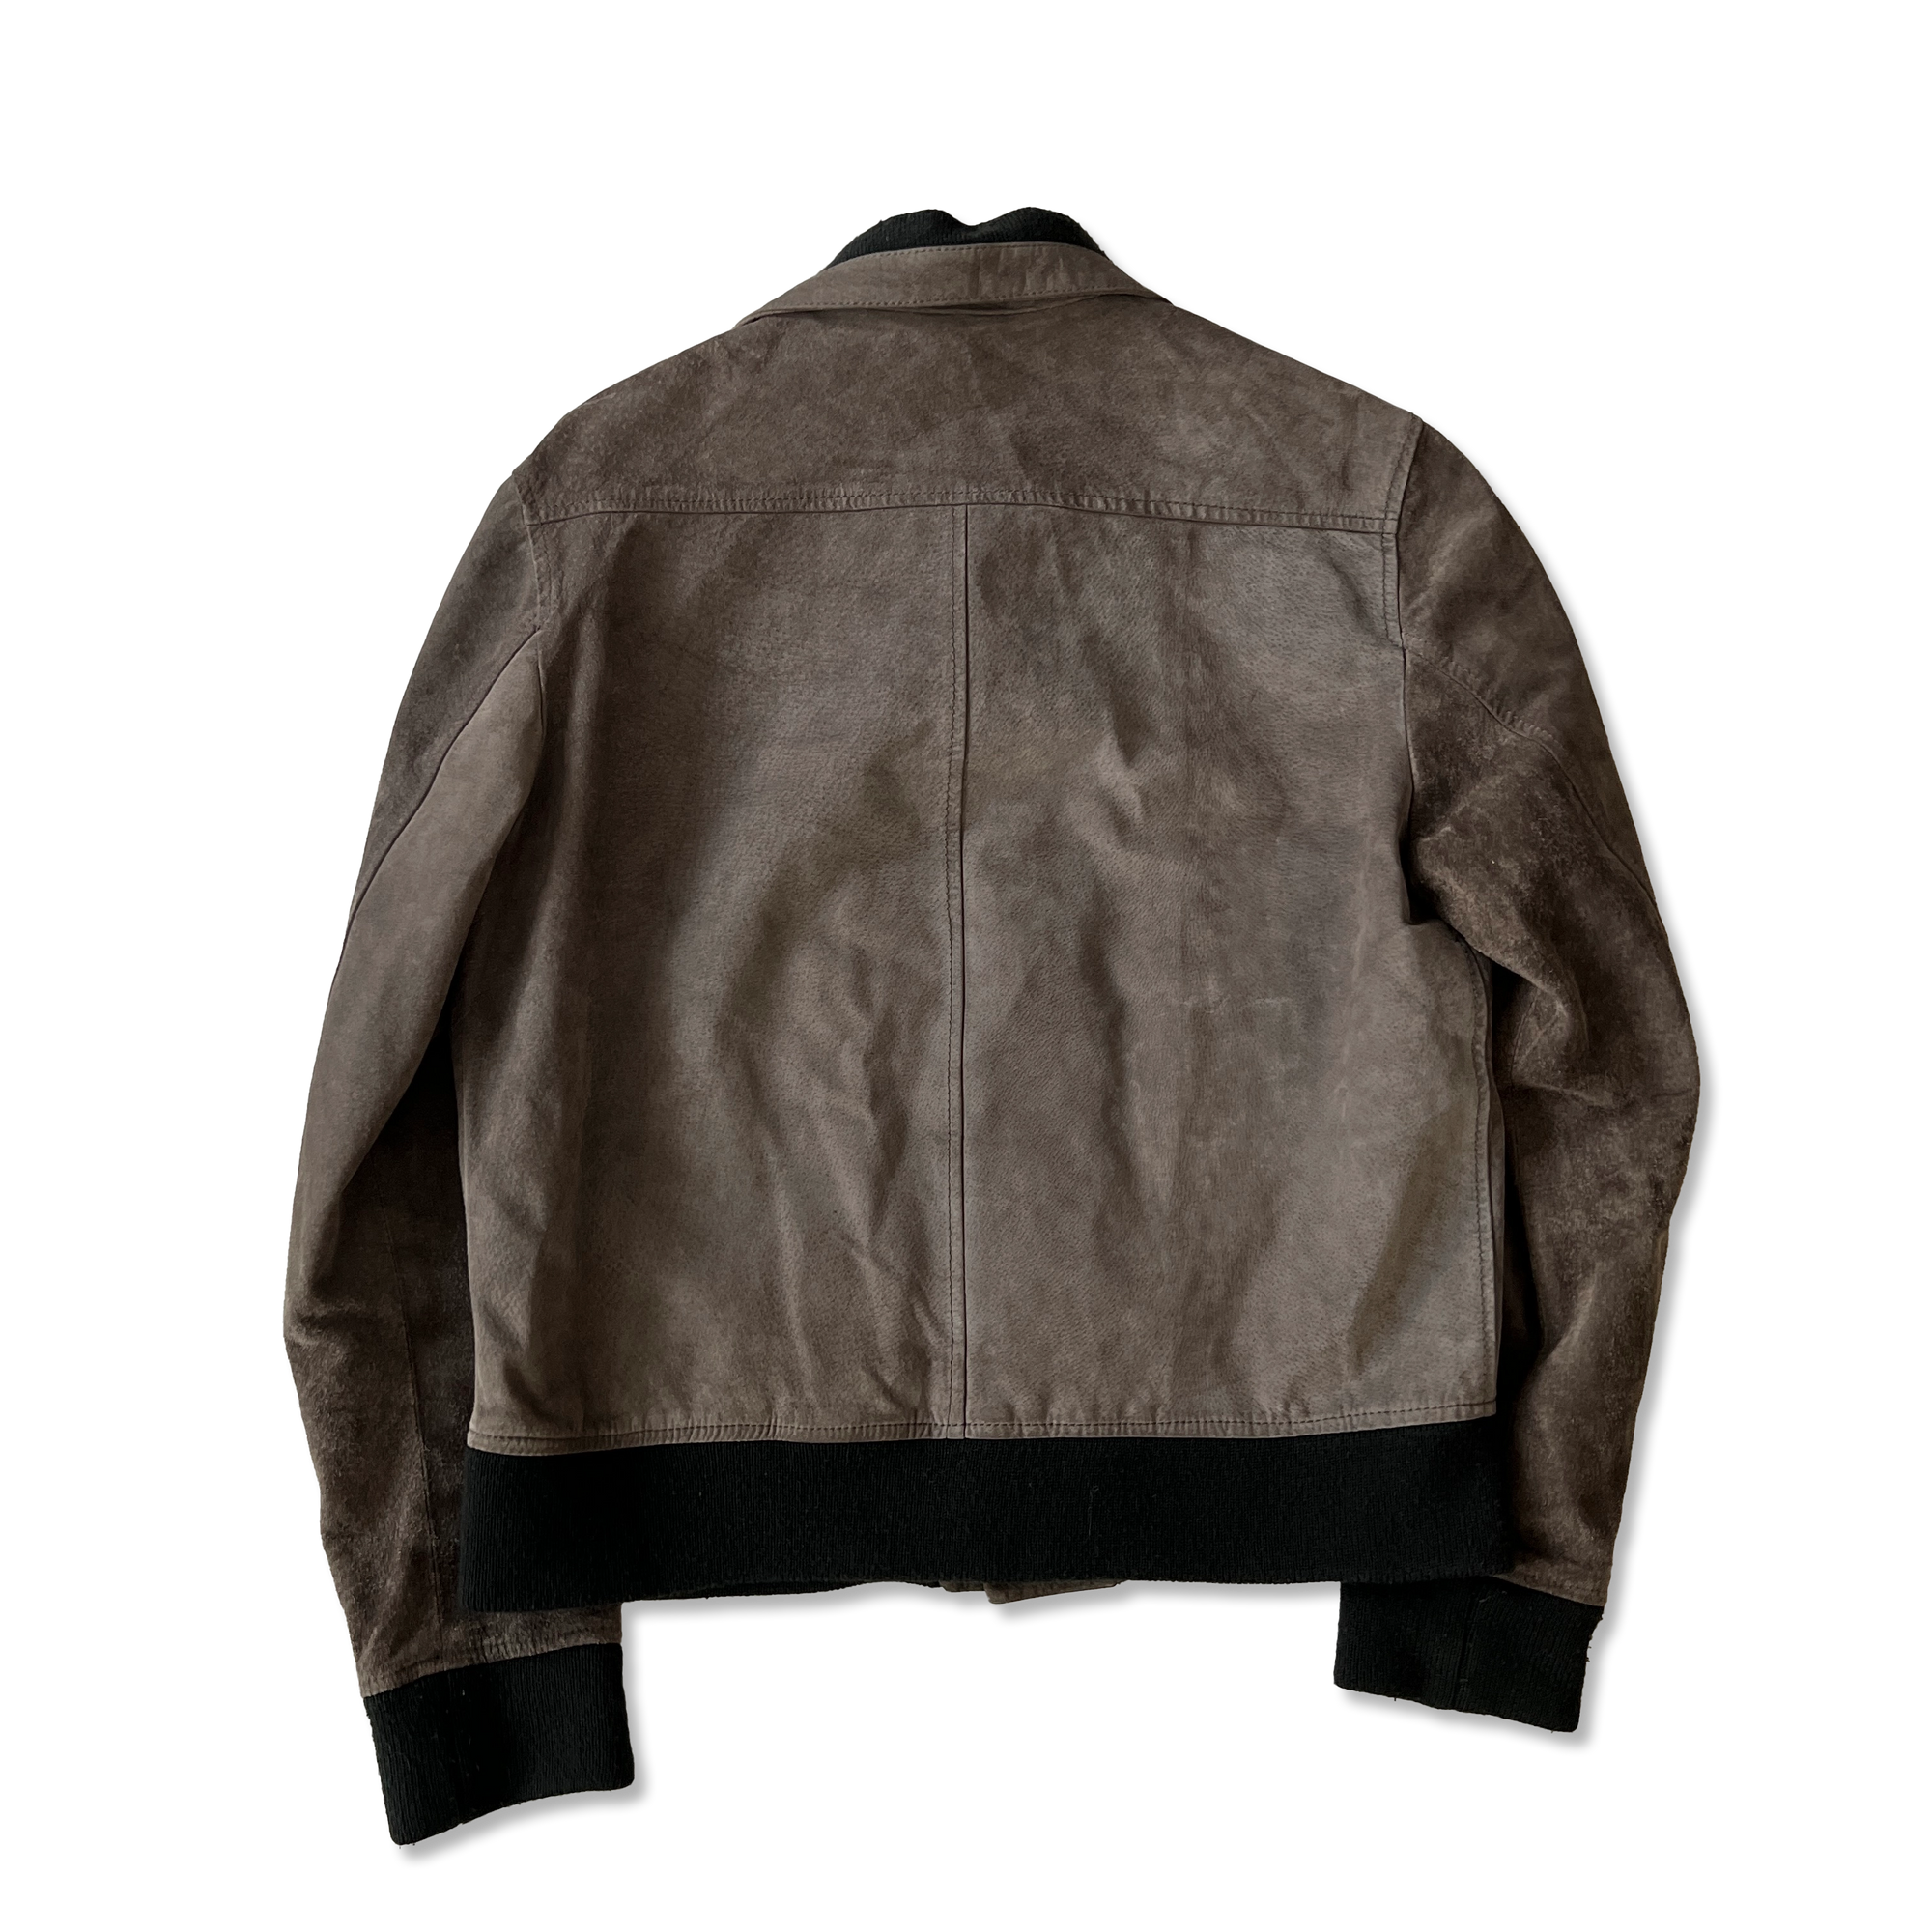 Maison Martin Margiela FW03 Grey Leather Jacket